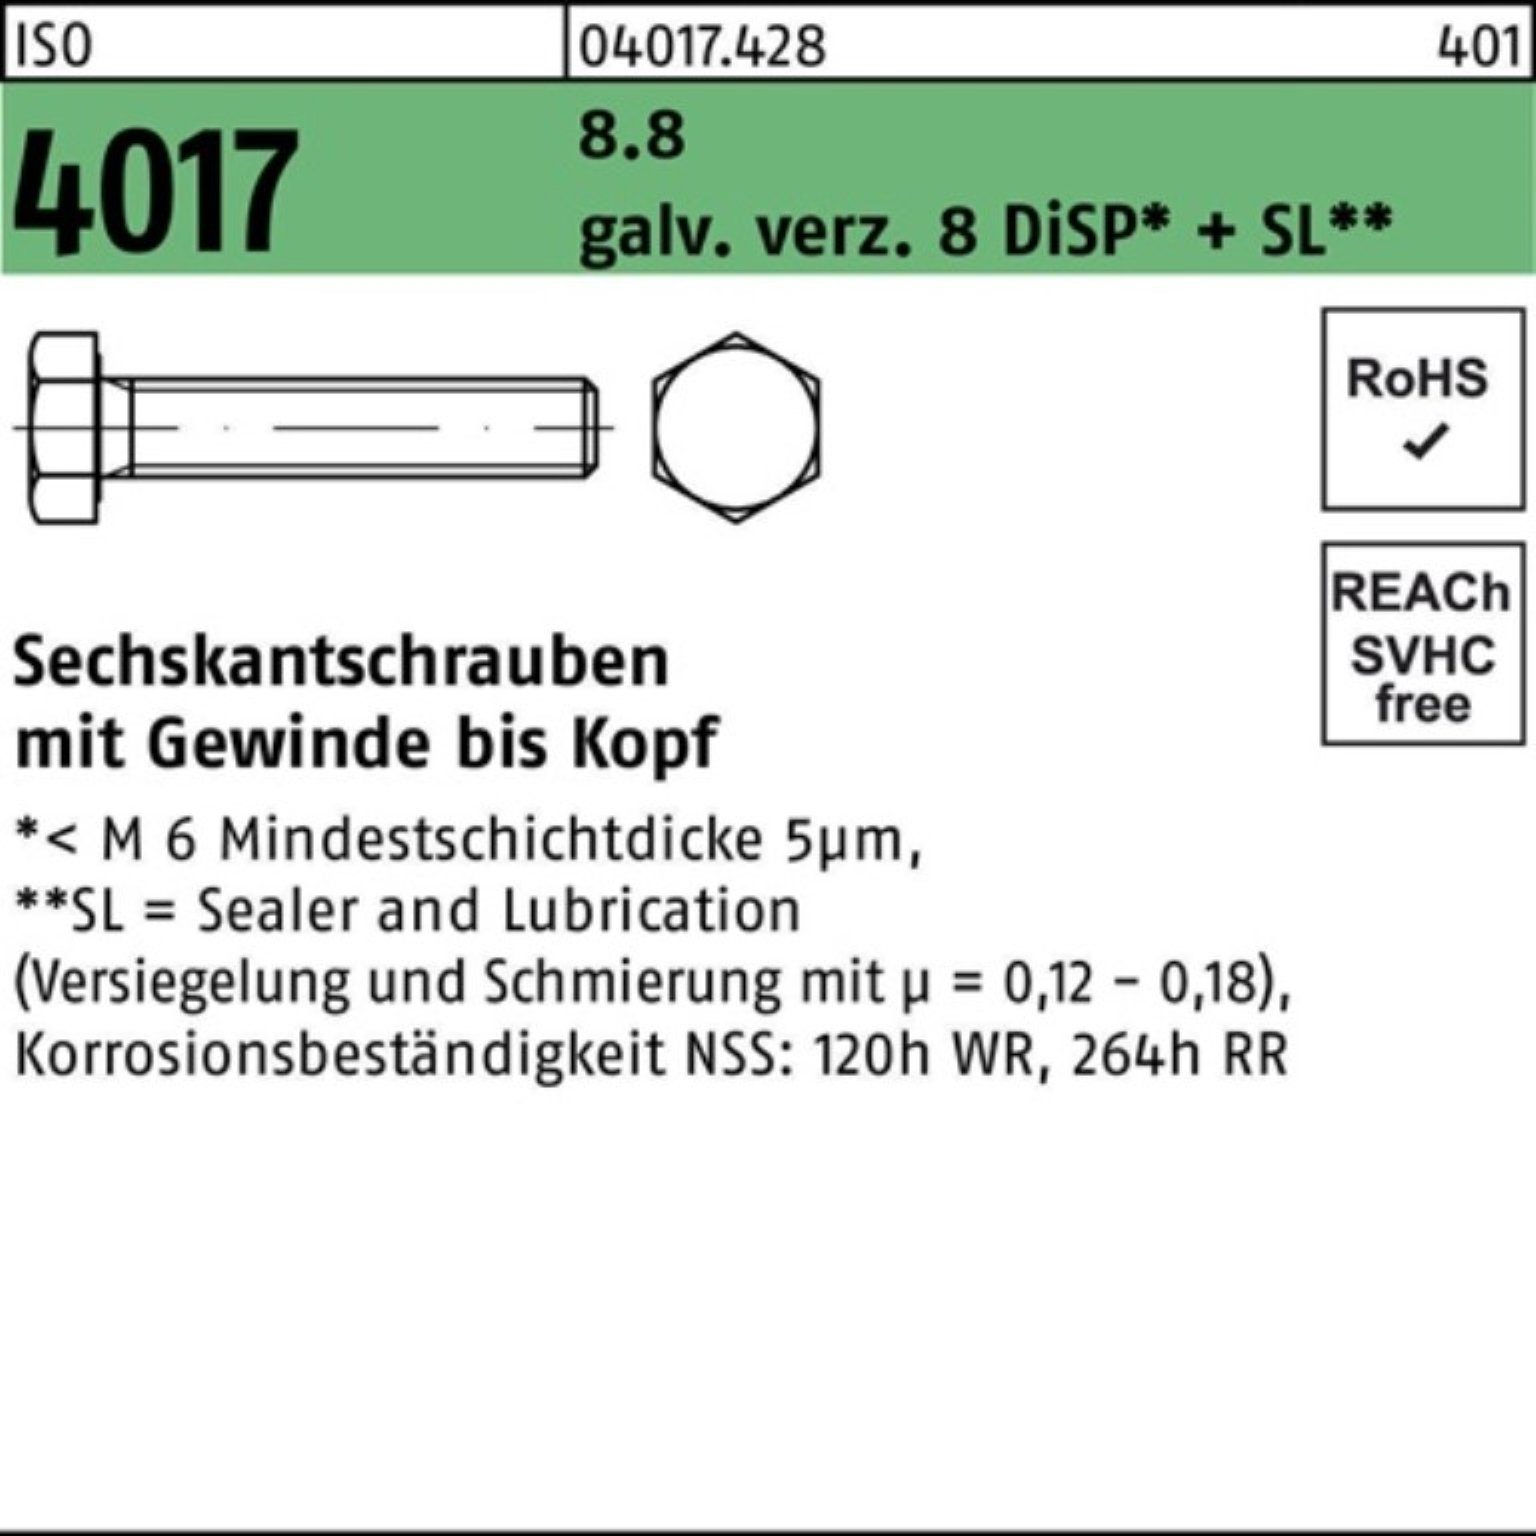 M24x VG 55 Sechskantschraube Pack 4017 galv.verz. 8 8.8 Bufab 100er Sechskantschraube ISO DiSP